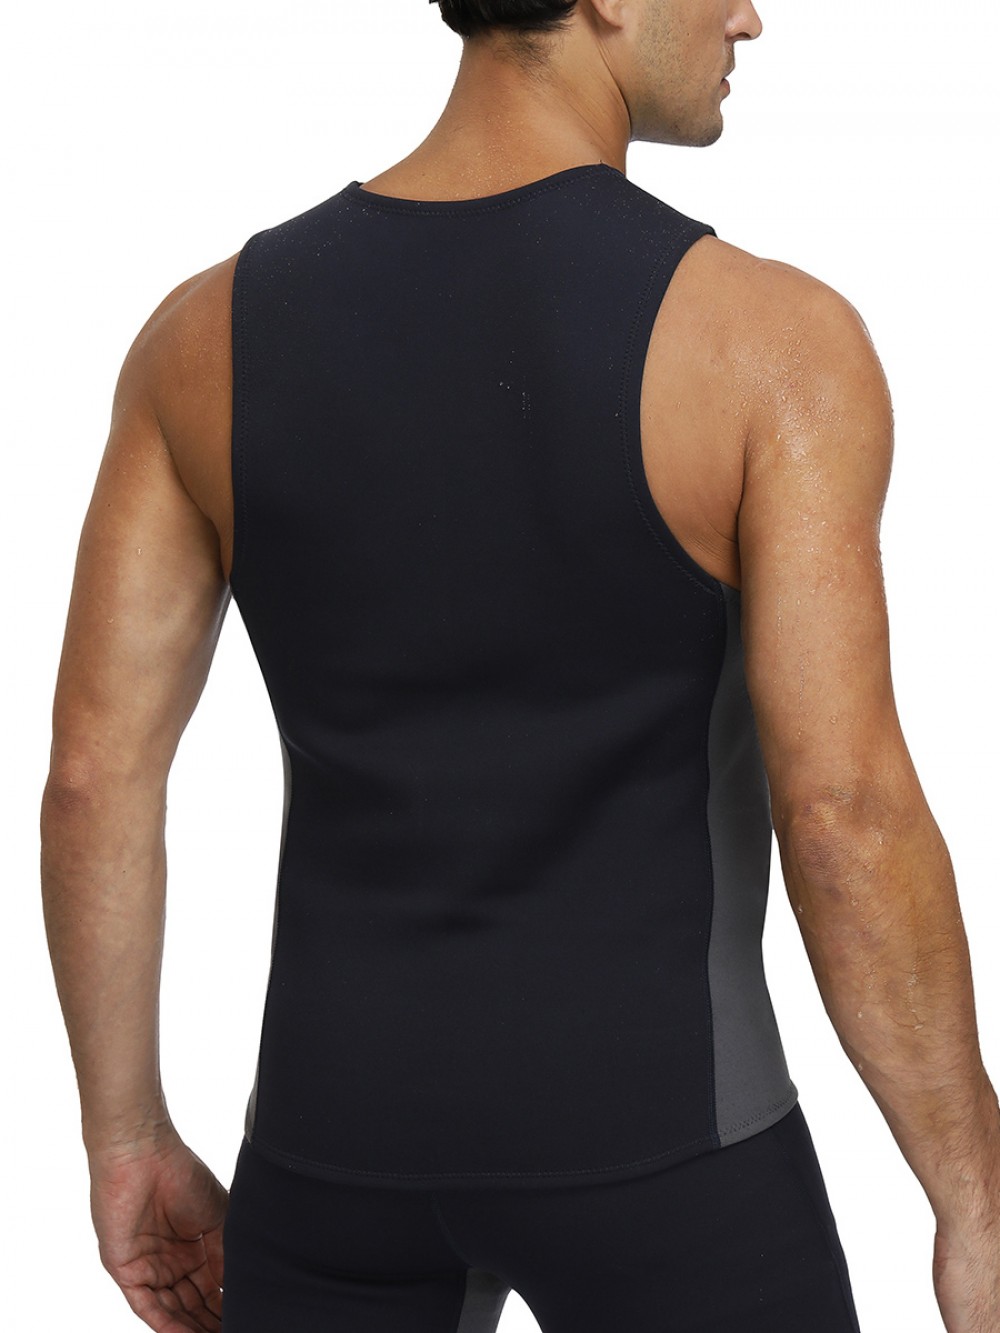 Black Neoprene Vest Shaper Large Size Round Neck For Training